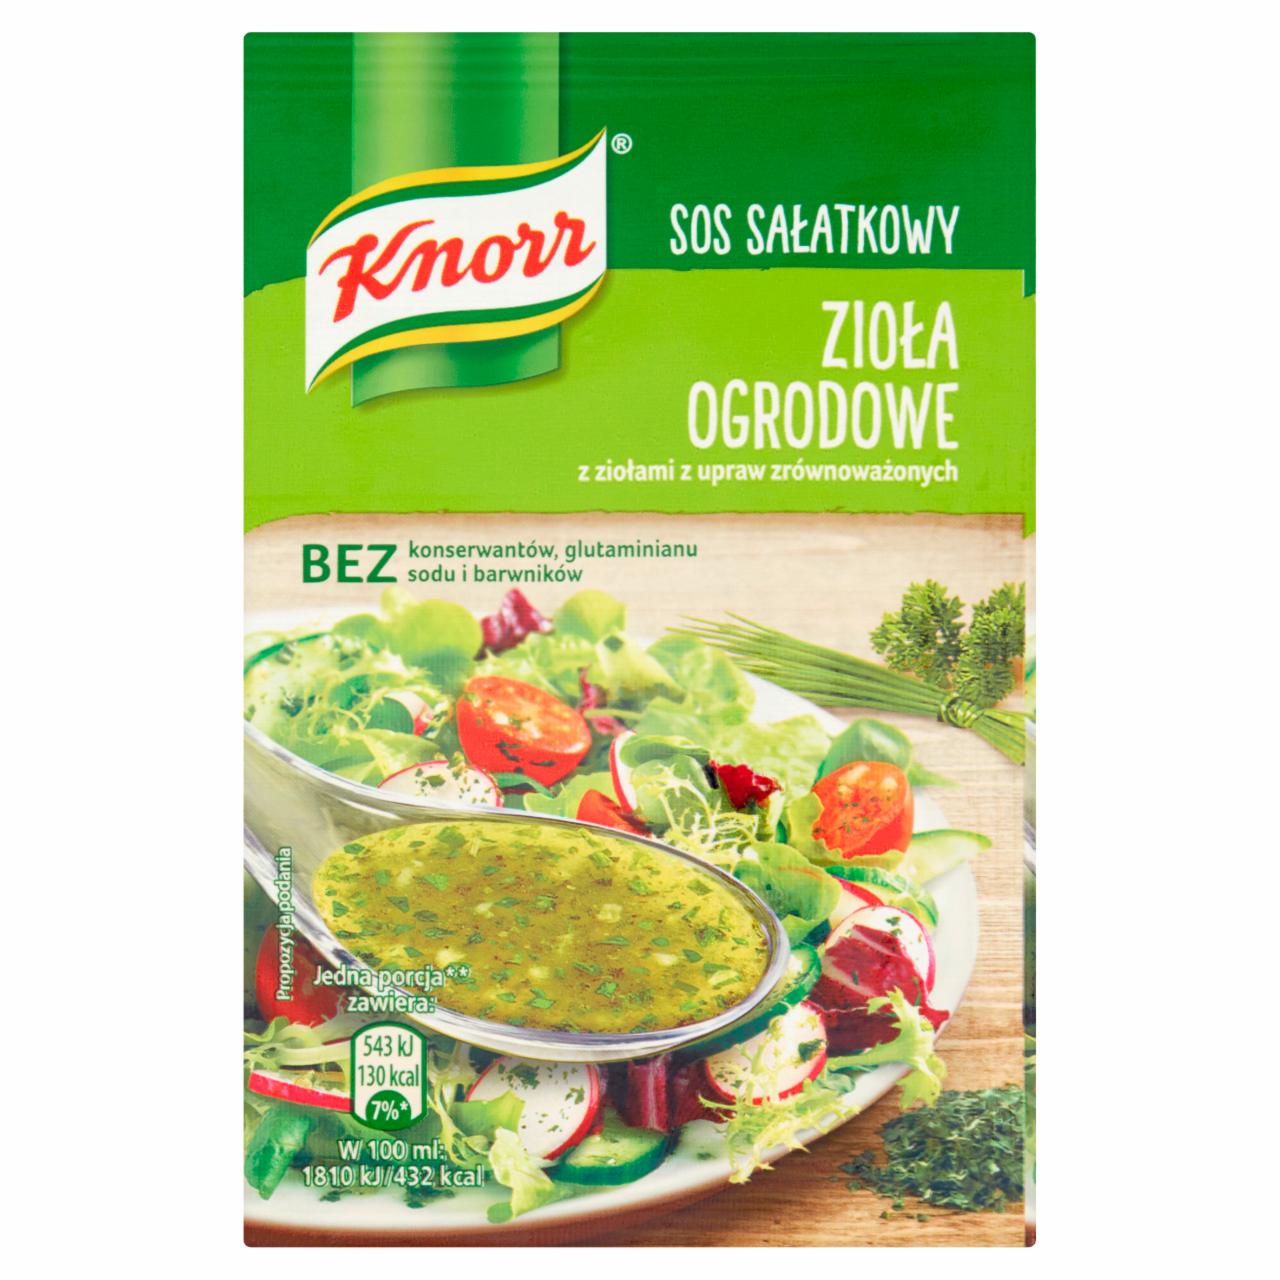 Zdjęcia - Knorr Sos sałatkowy zioła ogrodowe 8 g